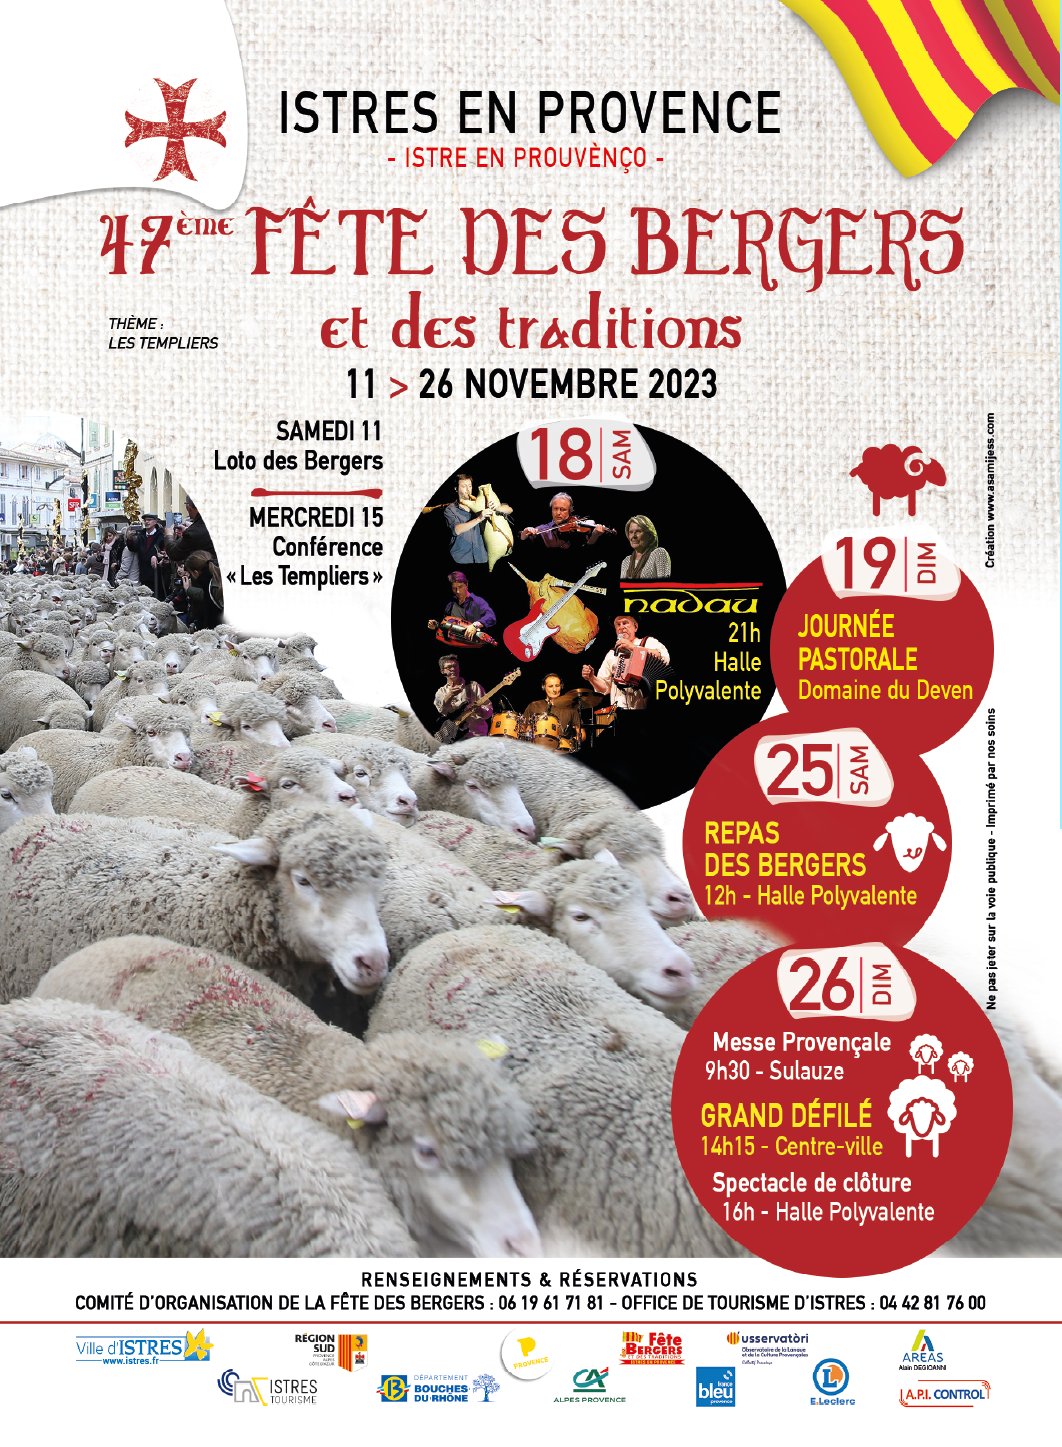 47ème fête des bergers et traditions de Provence